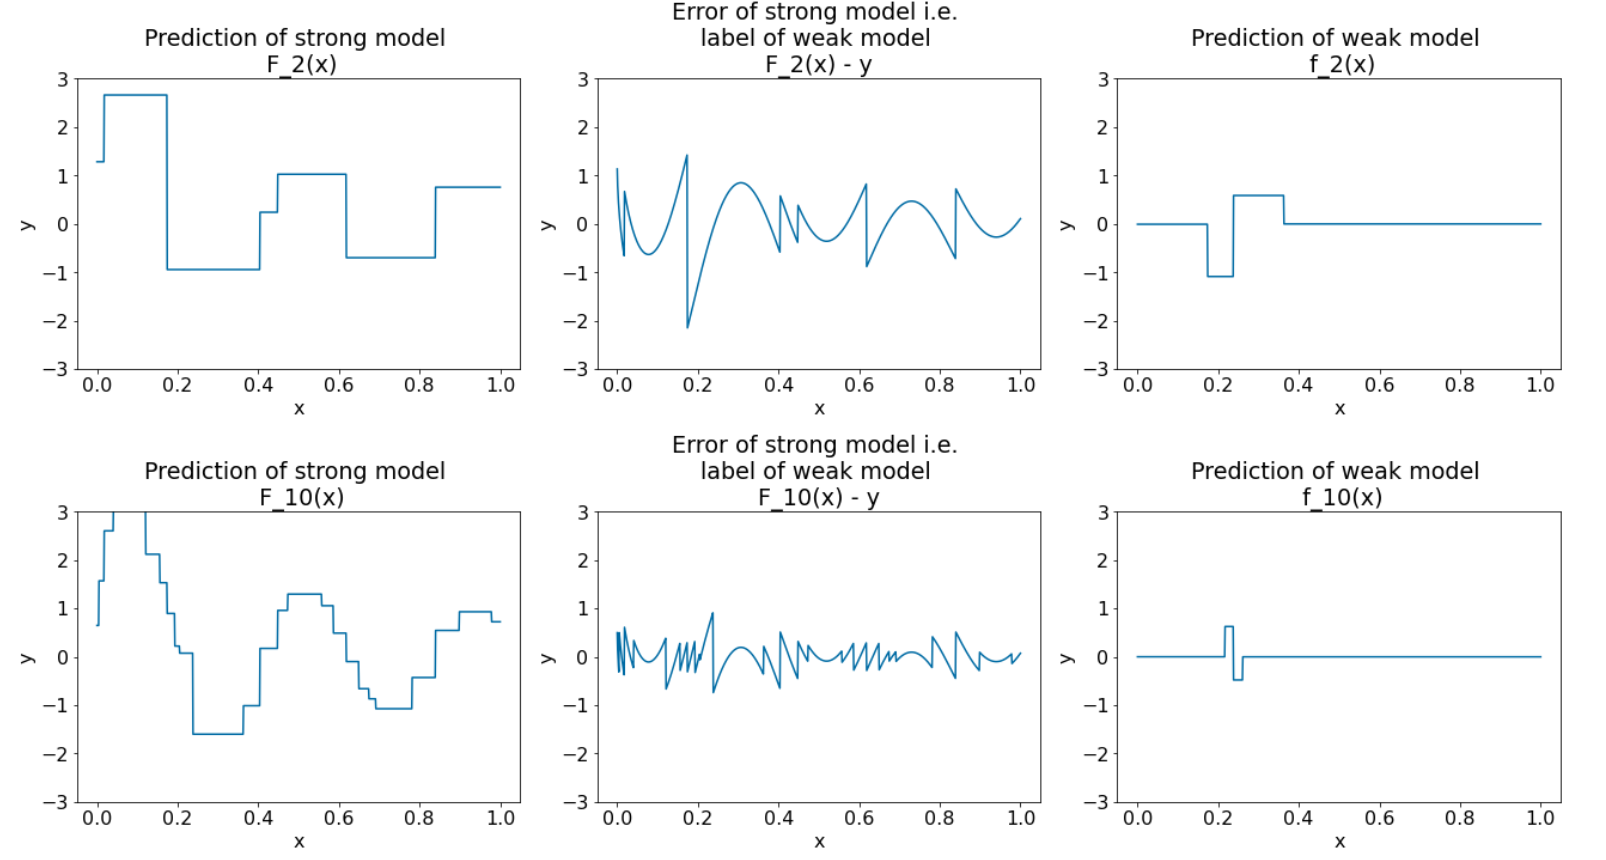 Os gráficos mostram que o modelo forte está se tornando cada vez mais real, enquanto a previsão do modelo fraco se torna gradualmente mais fraca.